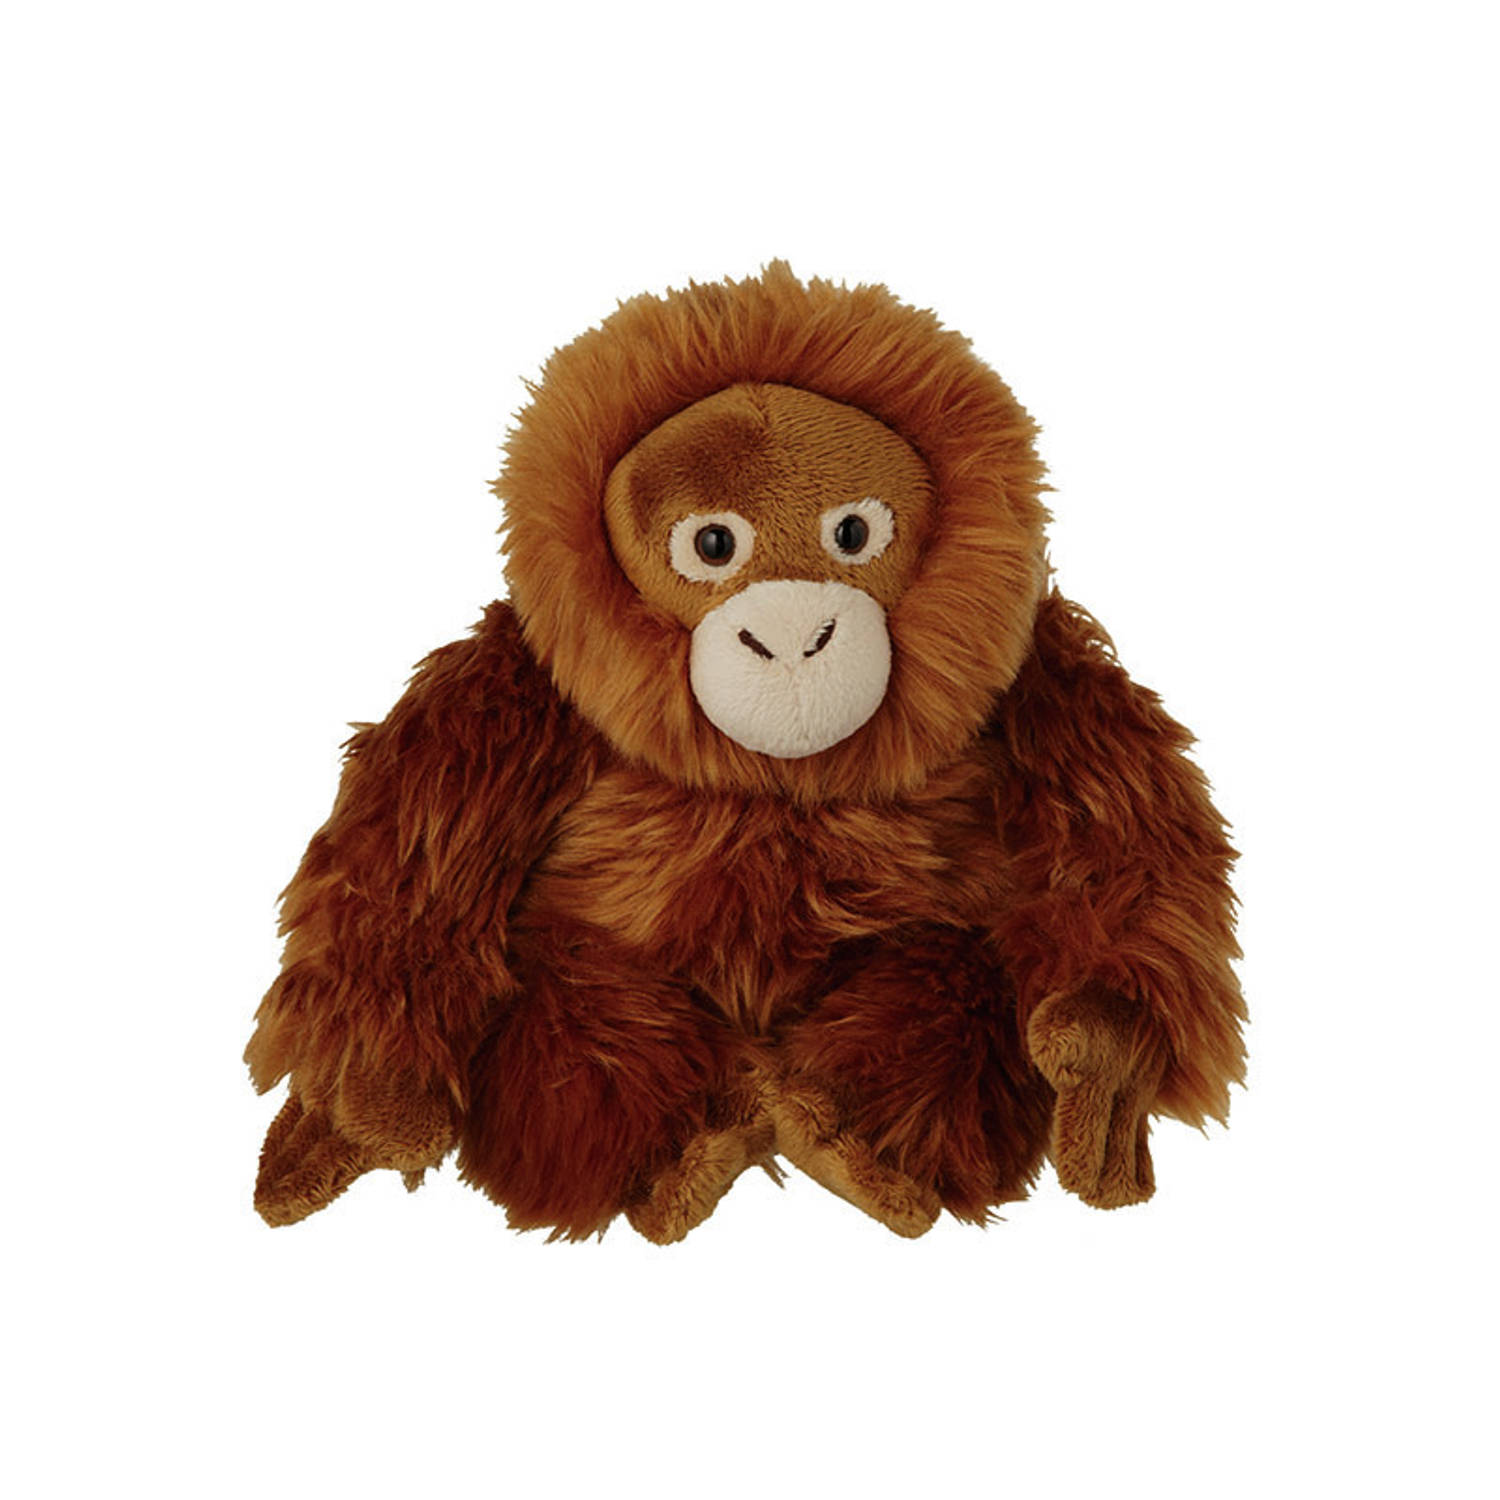 Pluche Orang Utan aap knuffel van 18 cm - Dieren speelgoed knuffels cadeau - Apen Knuffeldieren